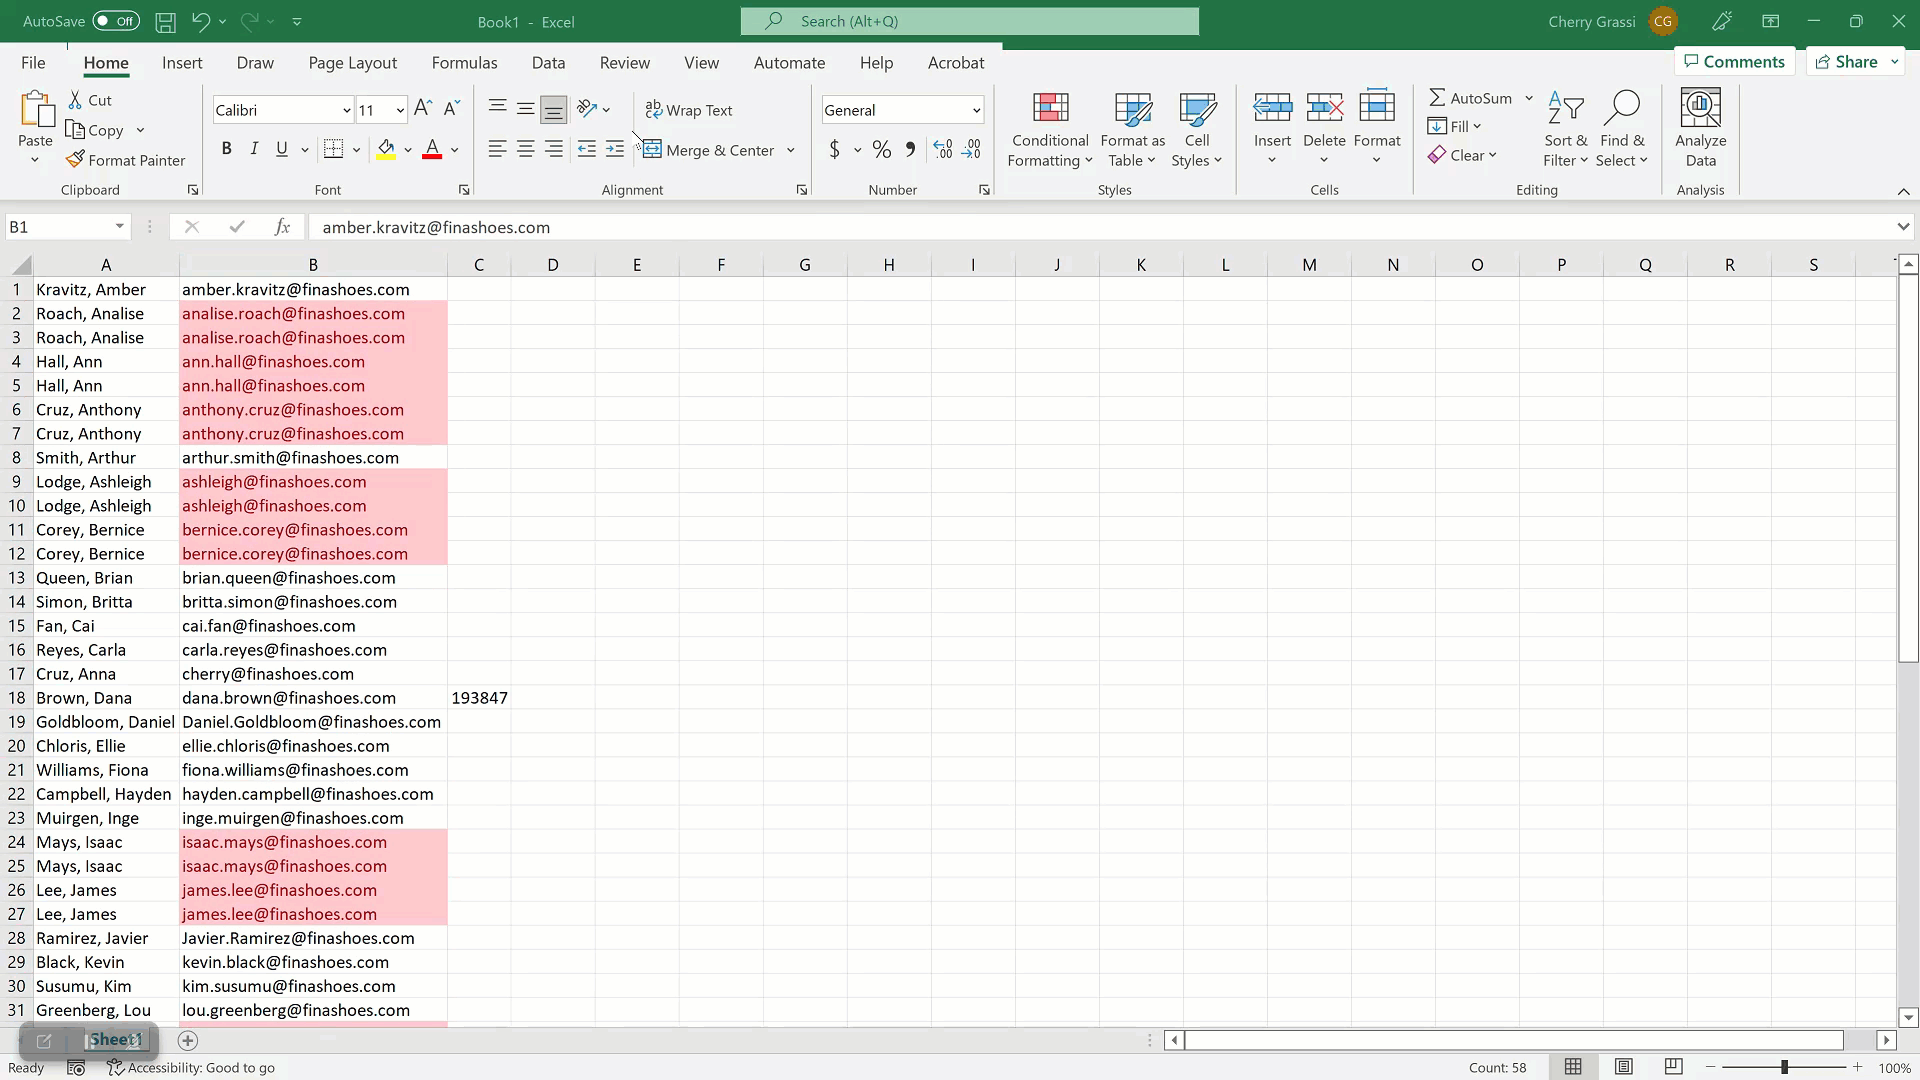 Excel - Remove Duplicates 20221130